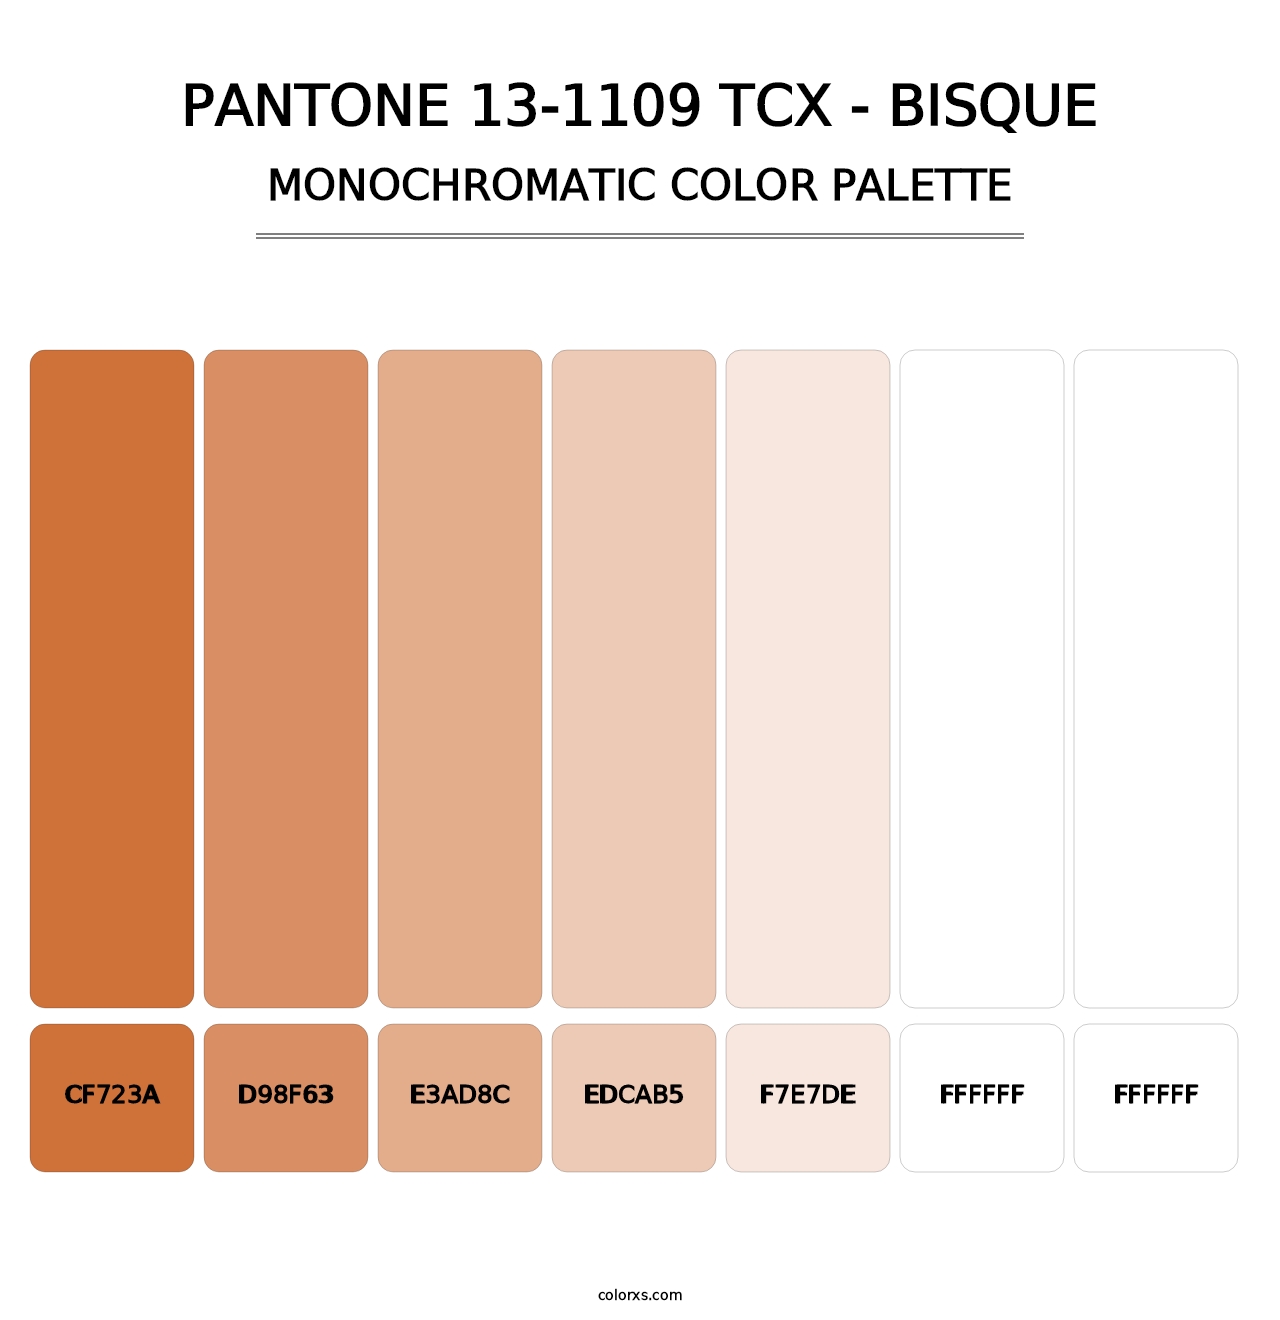 PANTONE 13-1109 TCX - Bisque - Monochromatic Color Palette